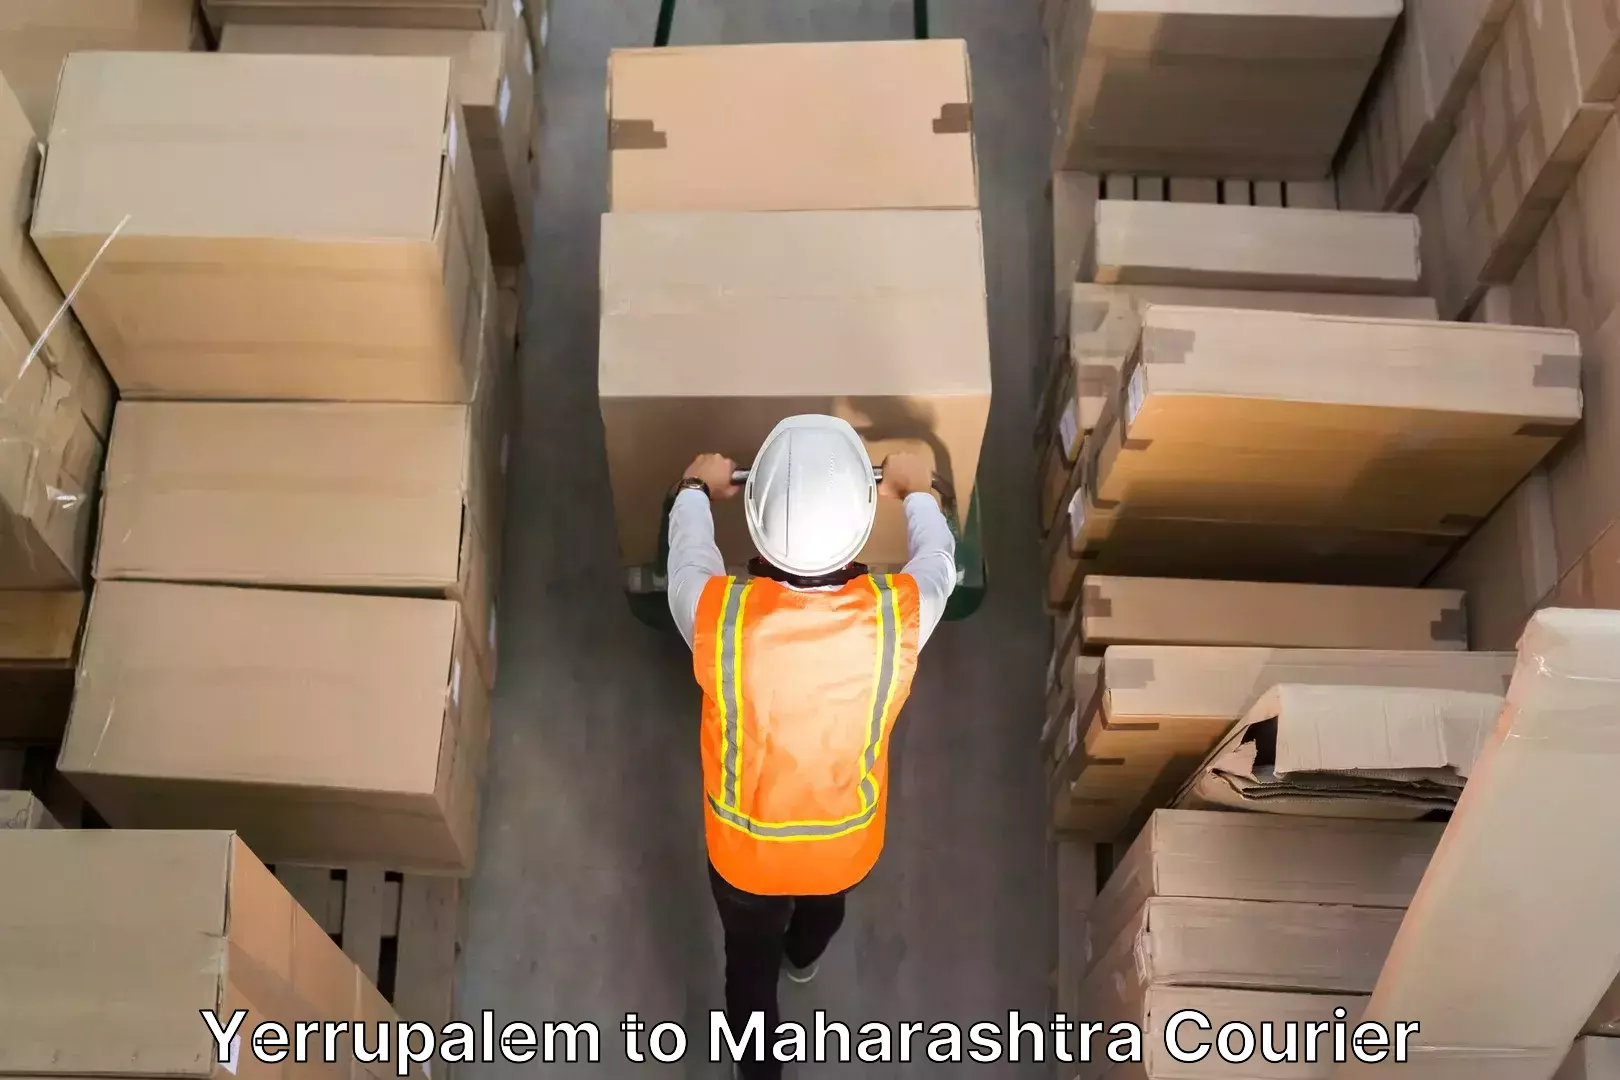 Skilled furniture transporters Yerrupalem to Maharashtra